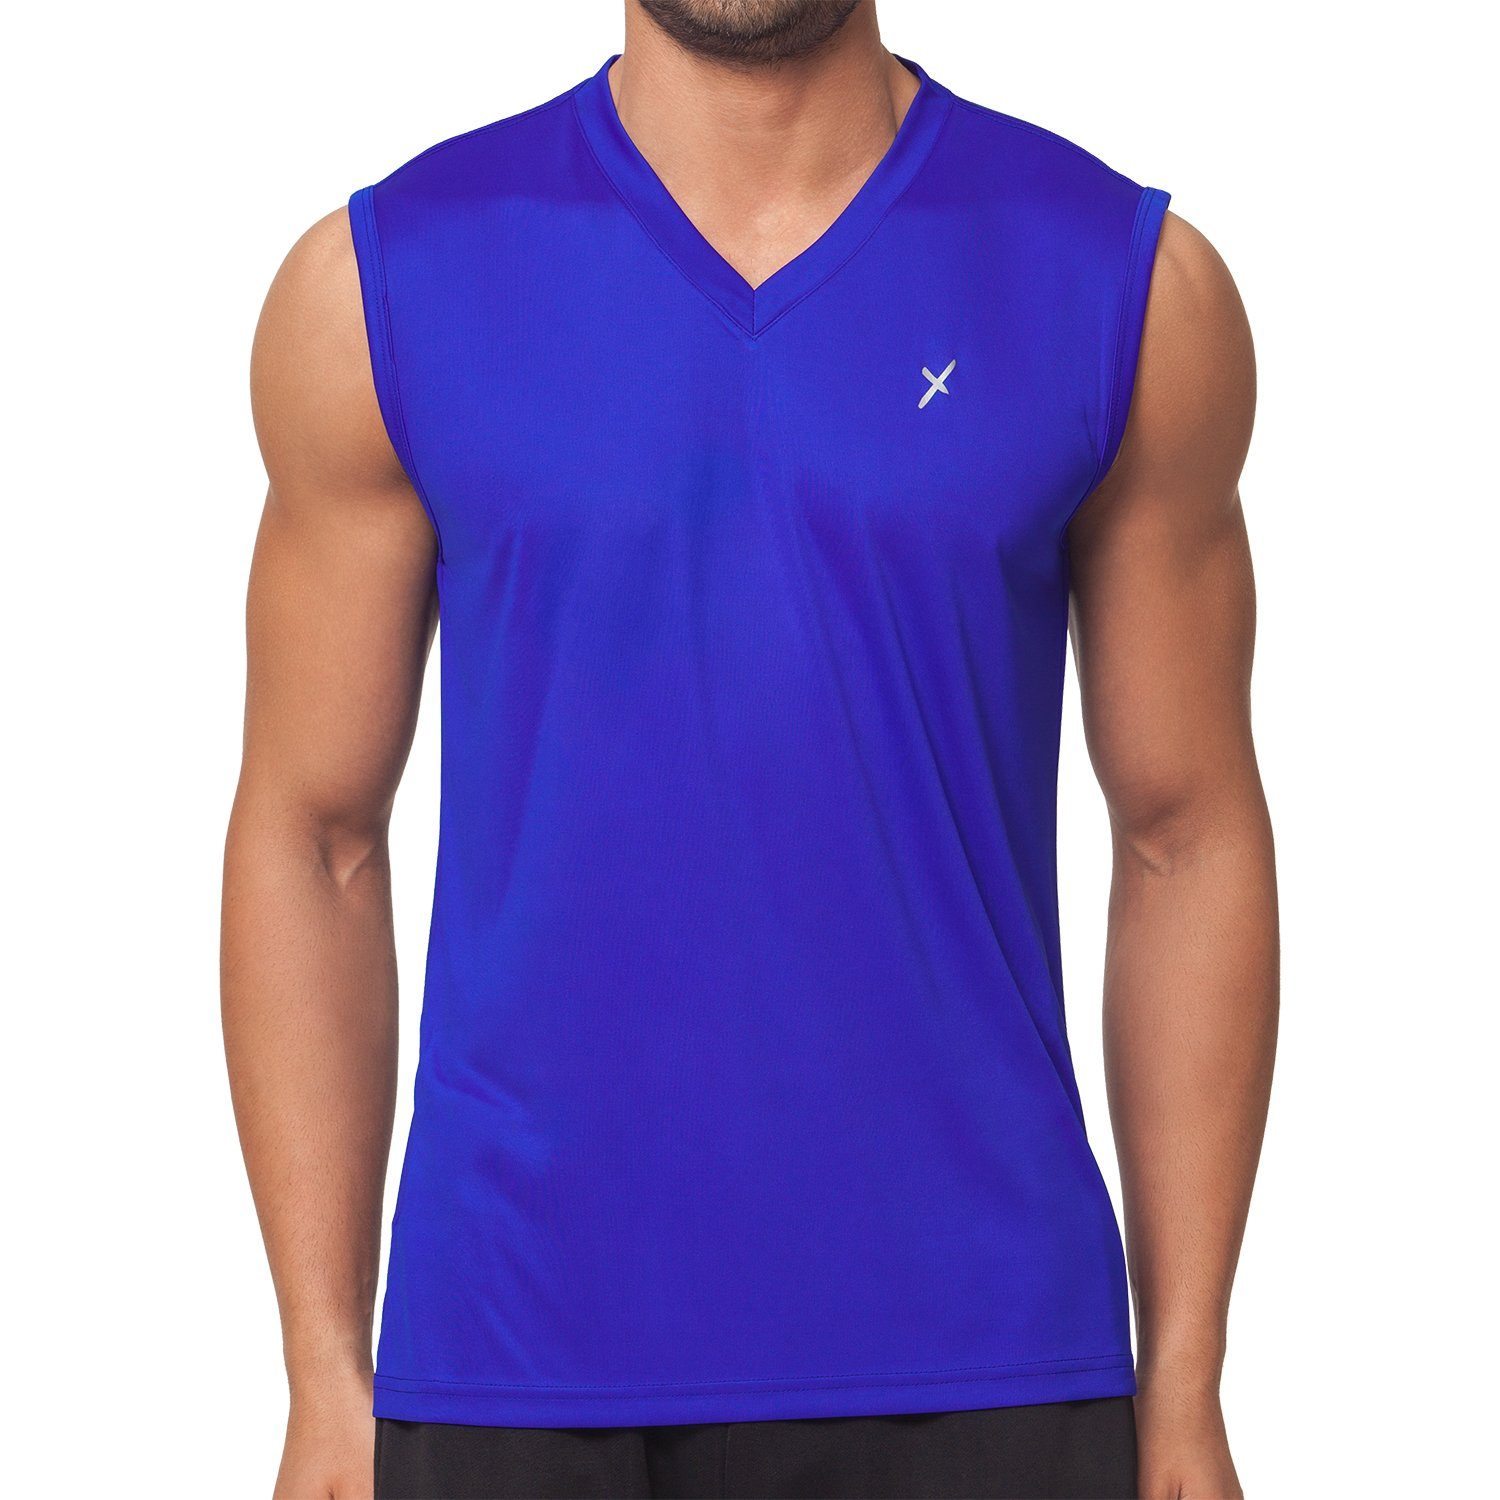 CFLEX Royalblau Trainingsshirt Sportswear Sport Herren Muscle-Shirt Collection Fitness Shirt